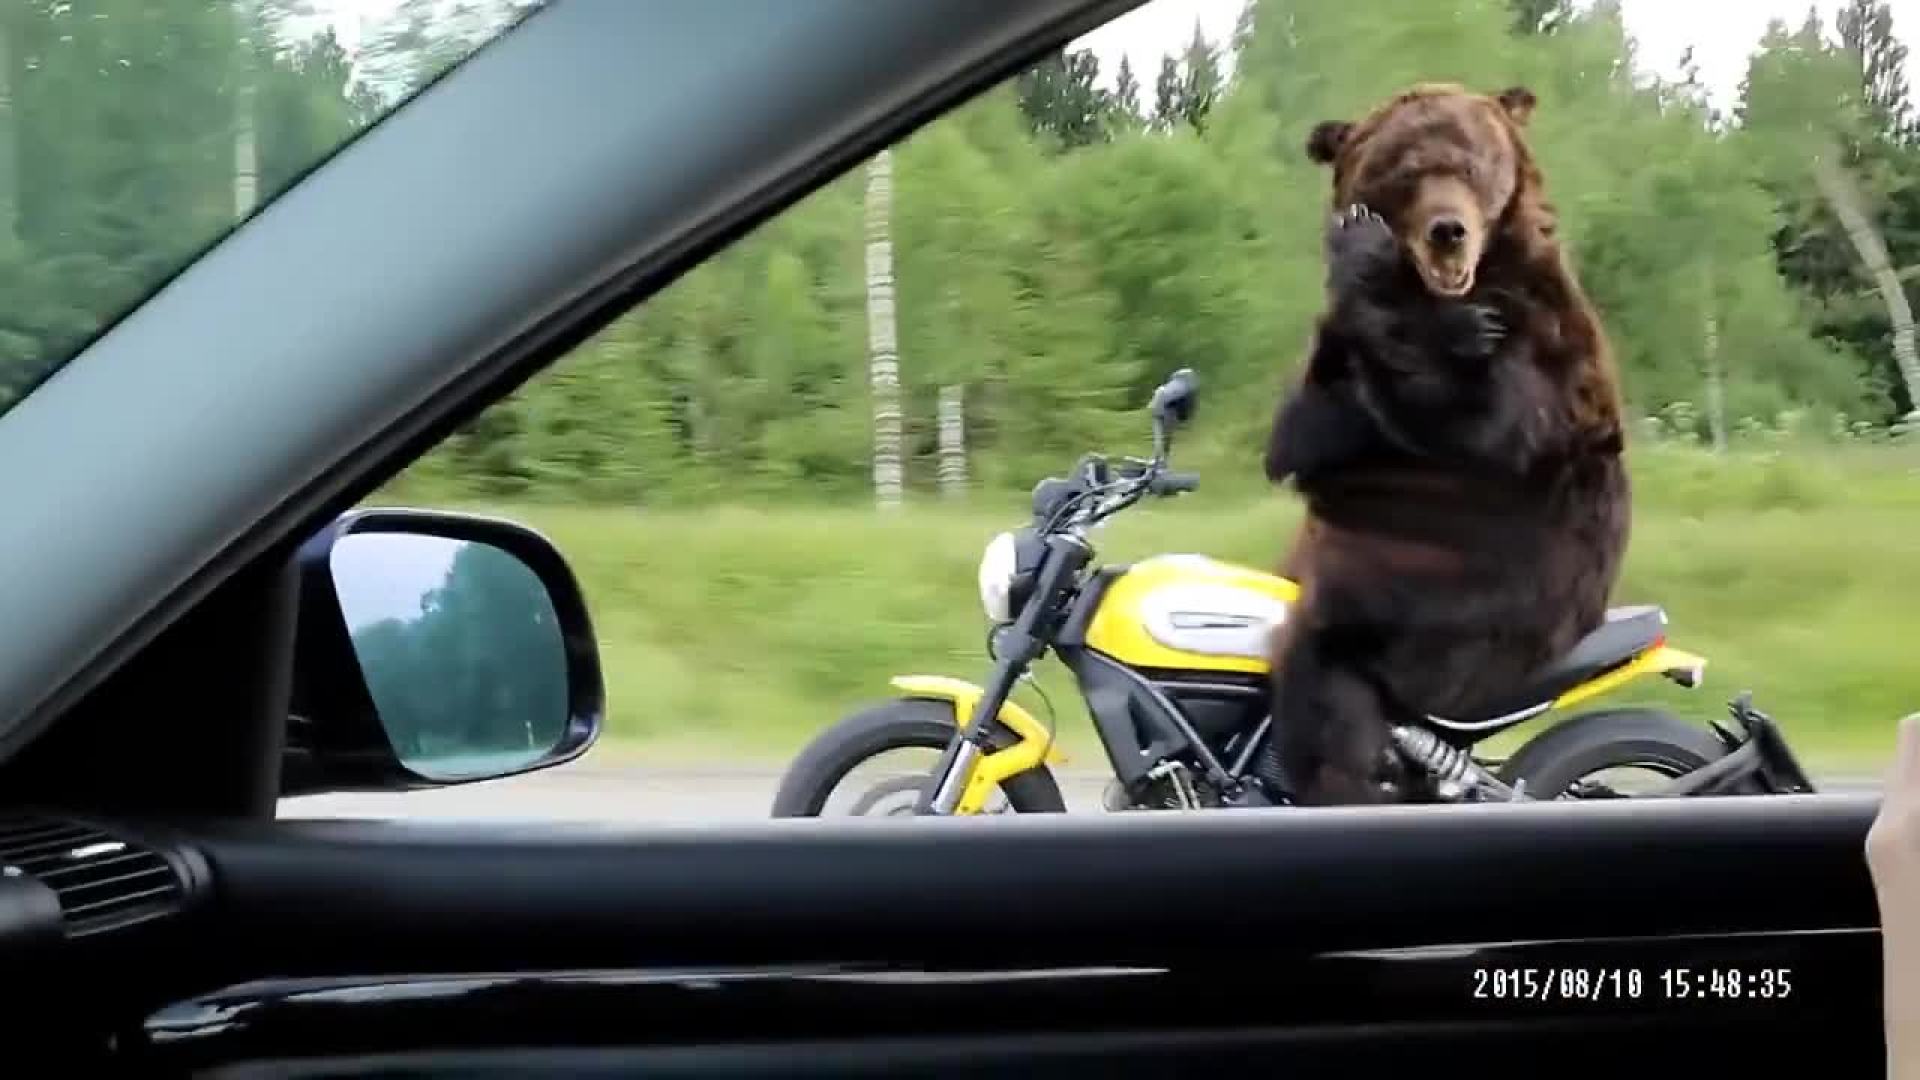 说好的不准成精!实拍棕熊骑摩托车兜风